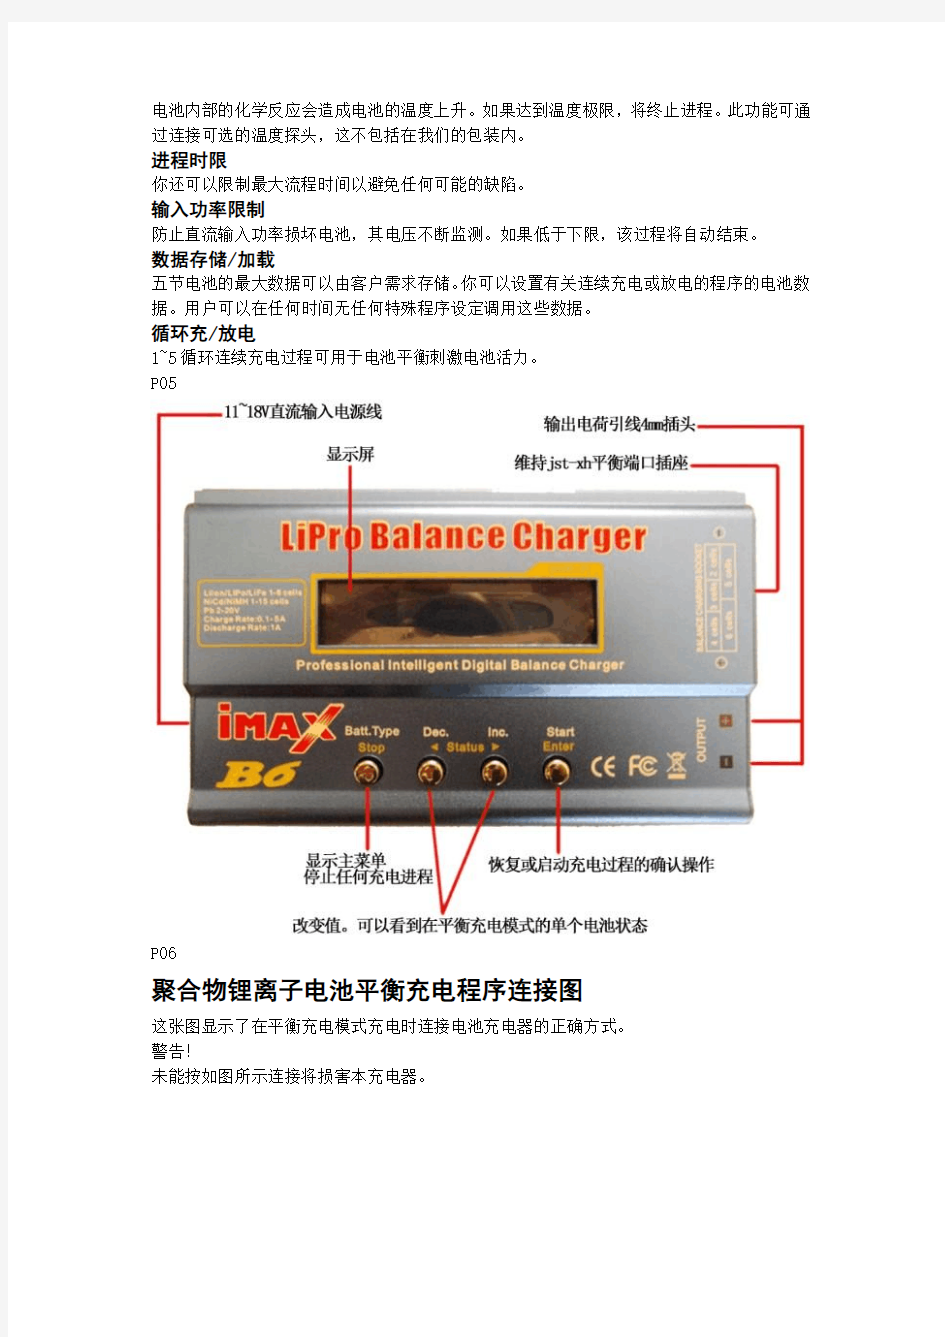 iMax B6充电器说明书中文翻译